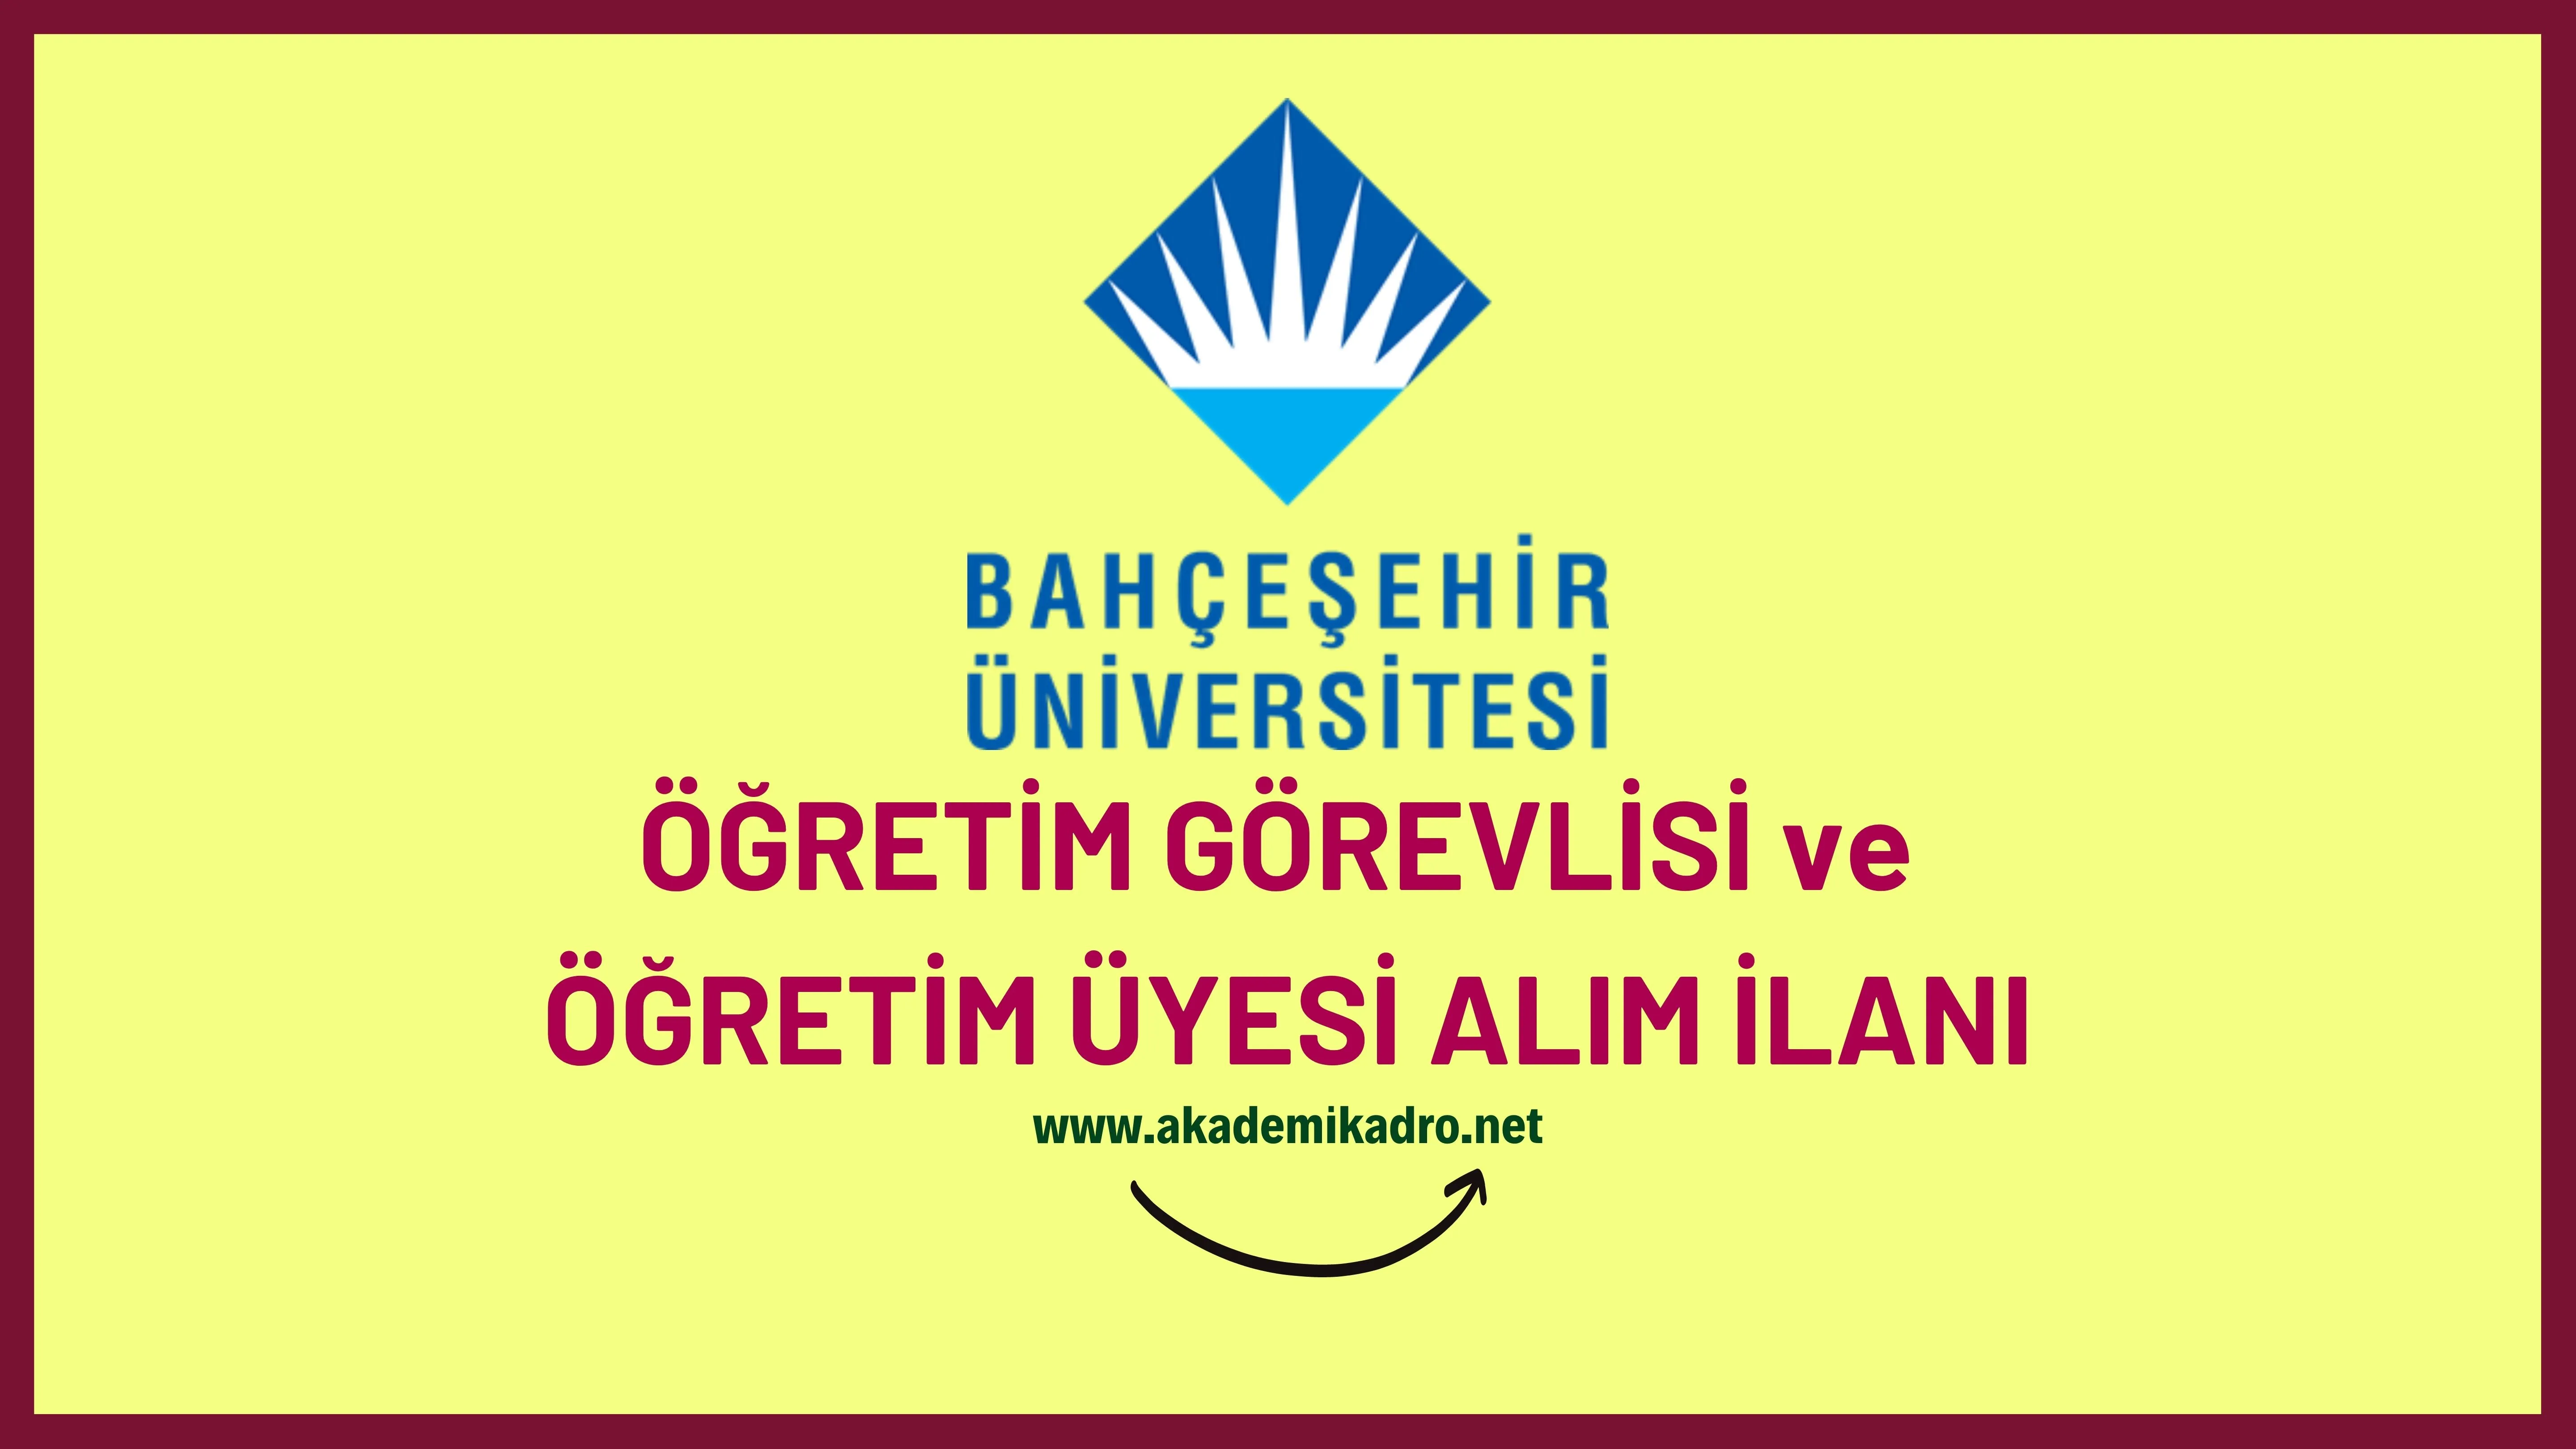 Bahçeşehir Üniversitesi 28 Öğretim görevlisi ve 70 Öğretim üyesi alacak.